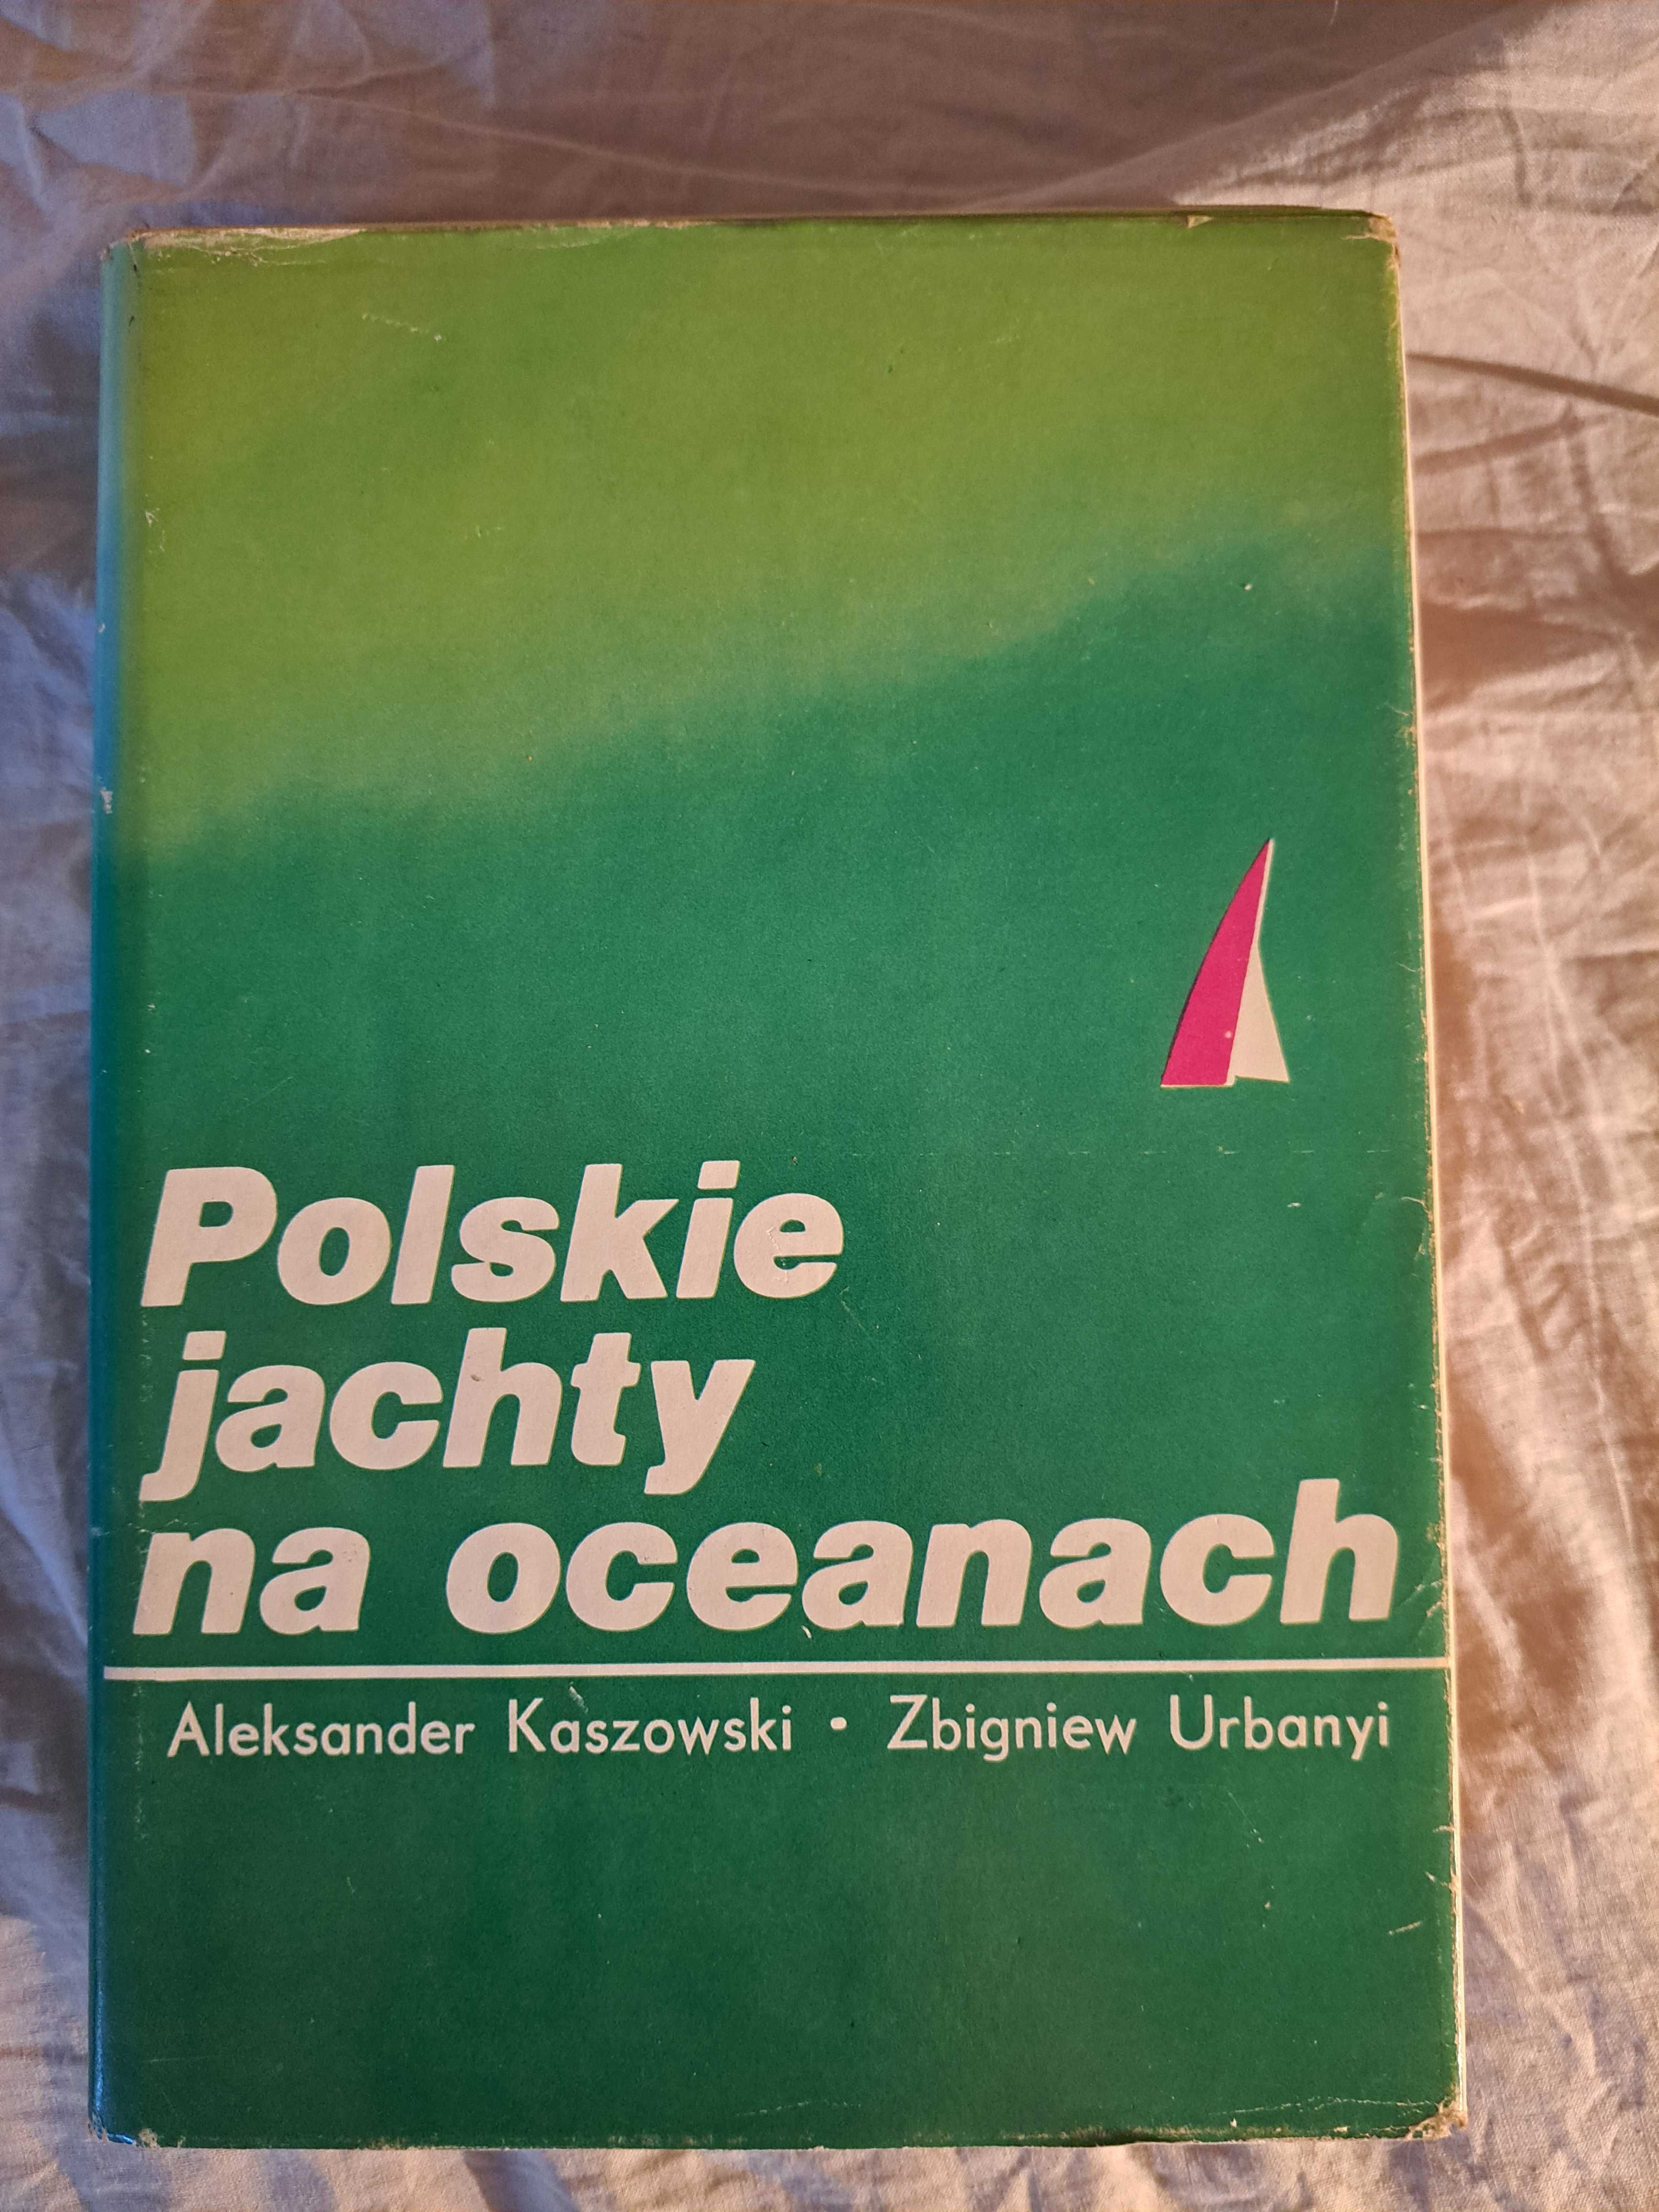 Polskie jachty na oceanach - A Kaszowski, Z. Urbanyi